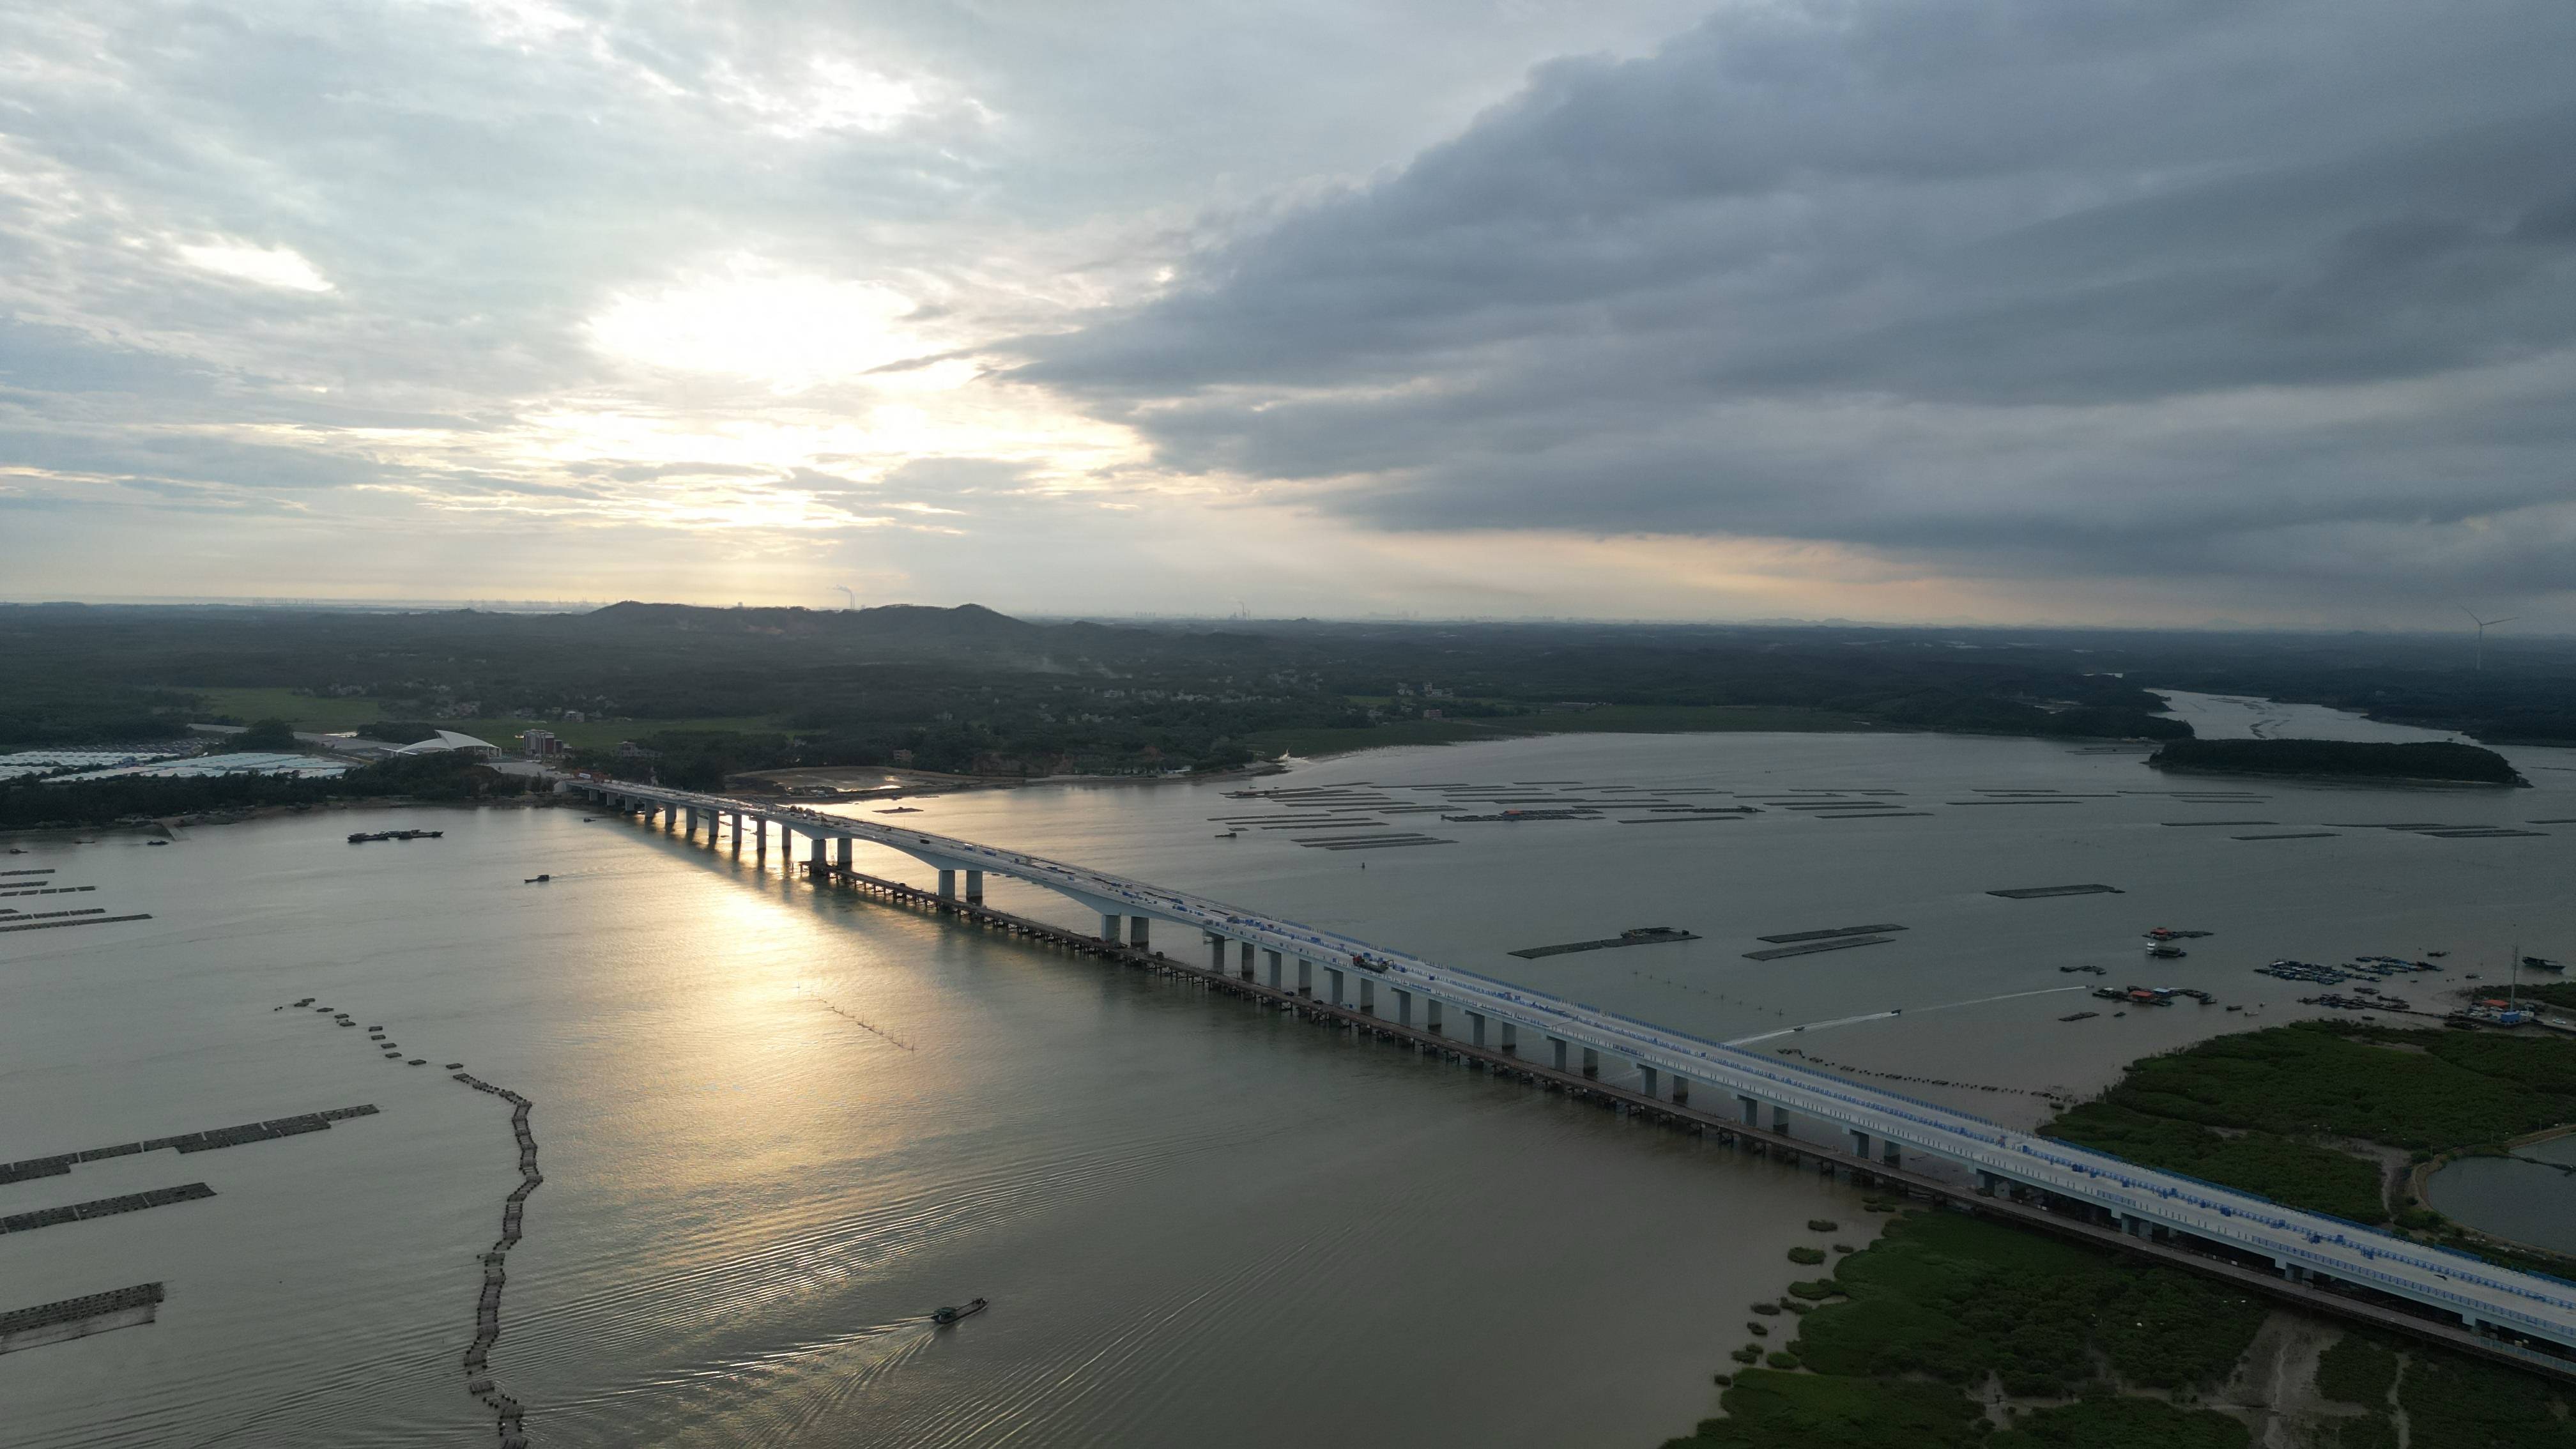 钦州大风江大桥图片